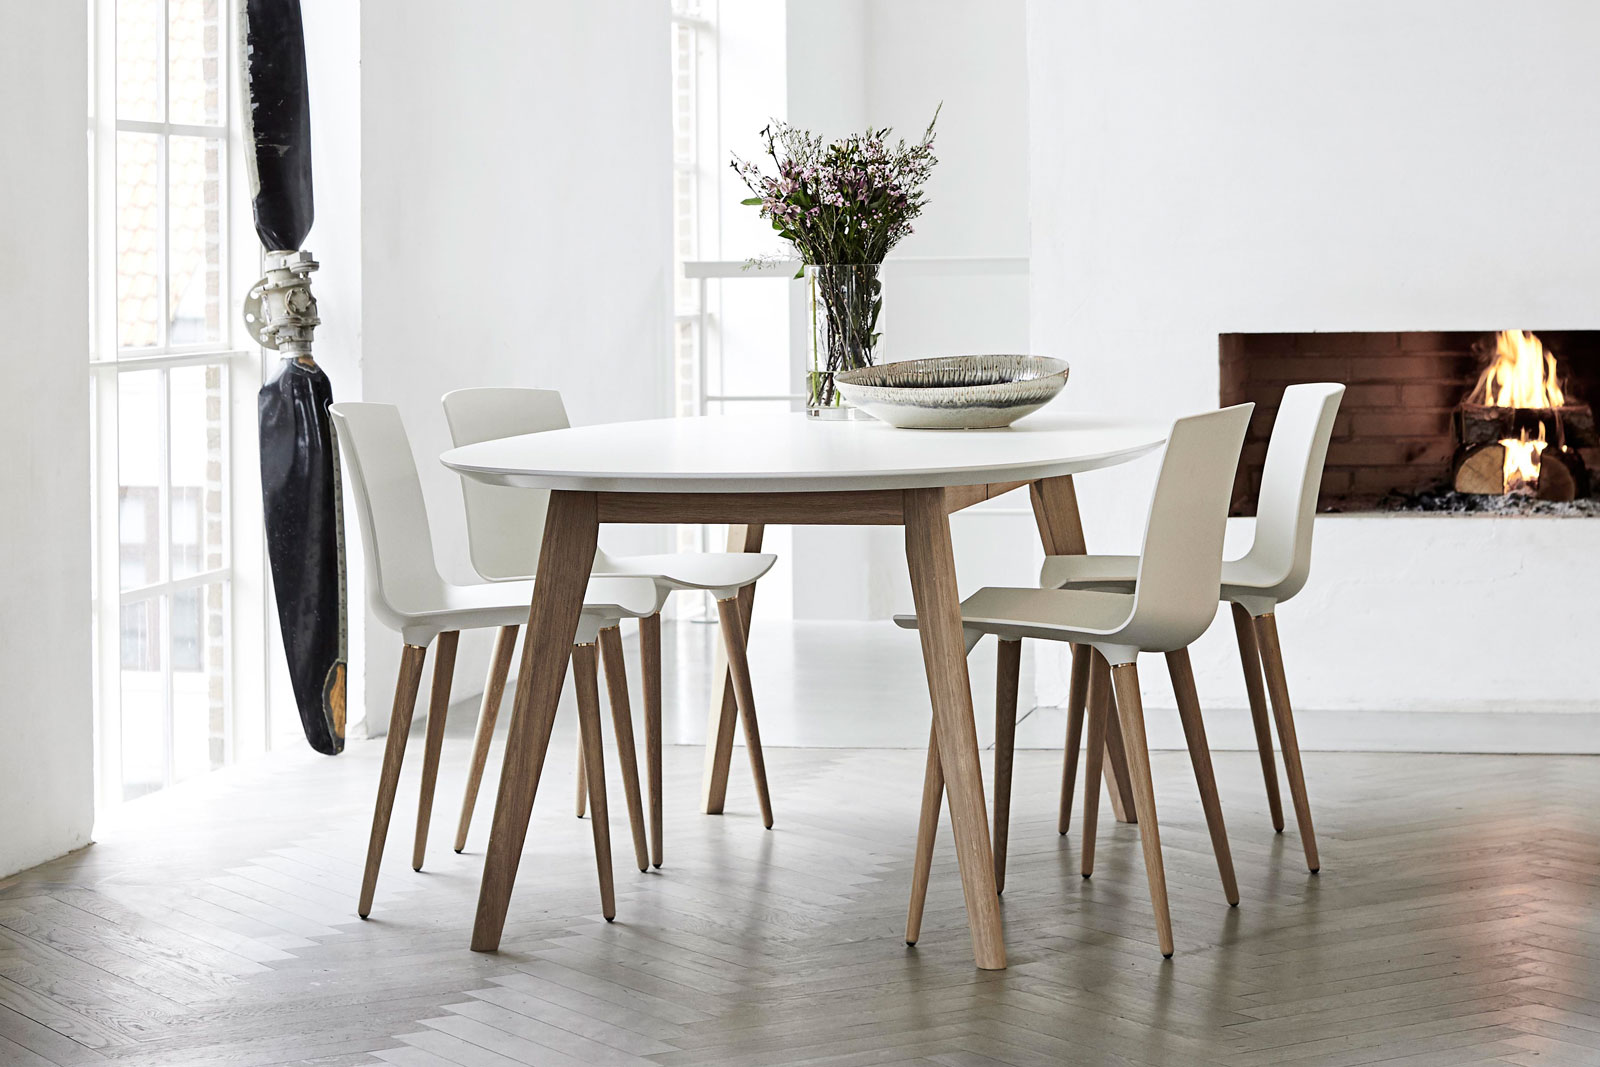 DK 10 Table von Andersen Furniture